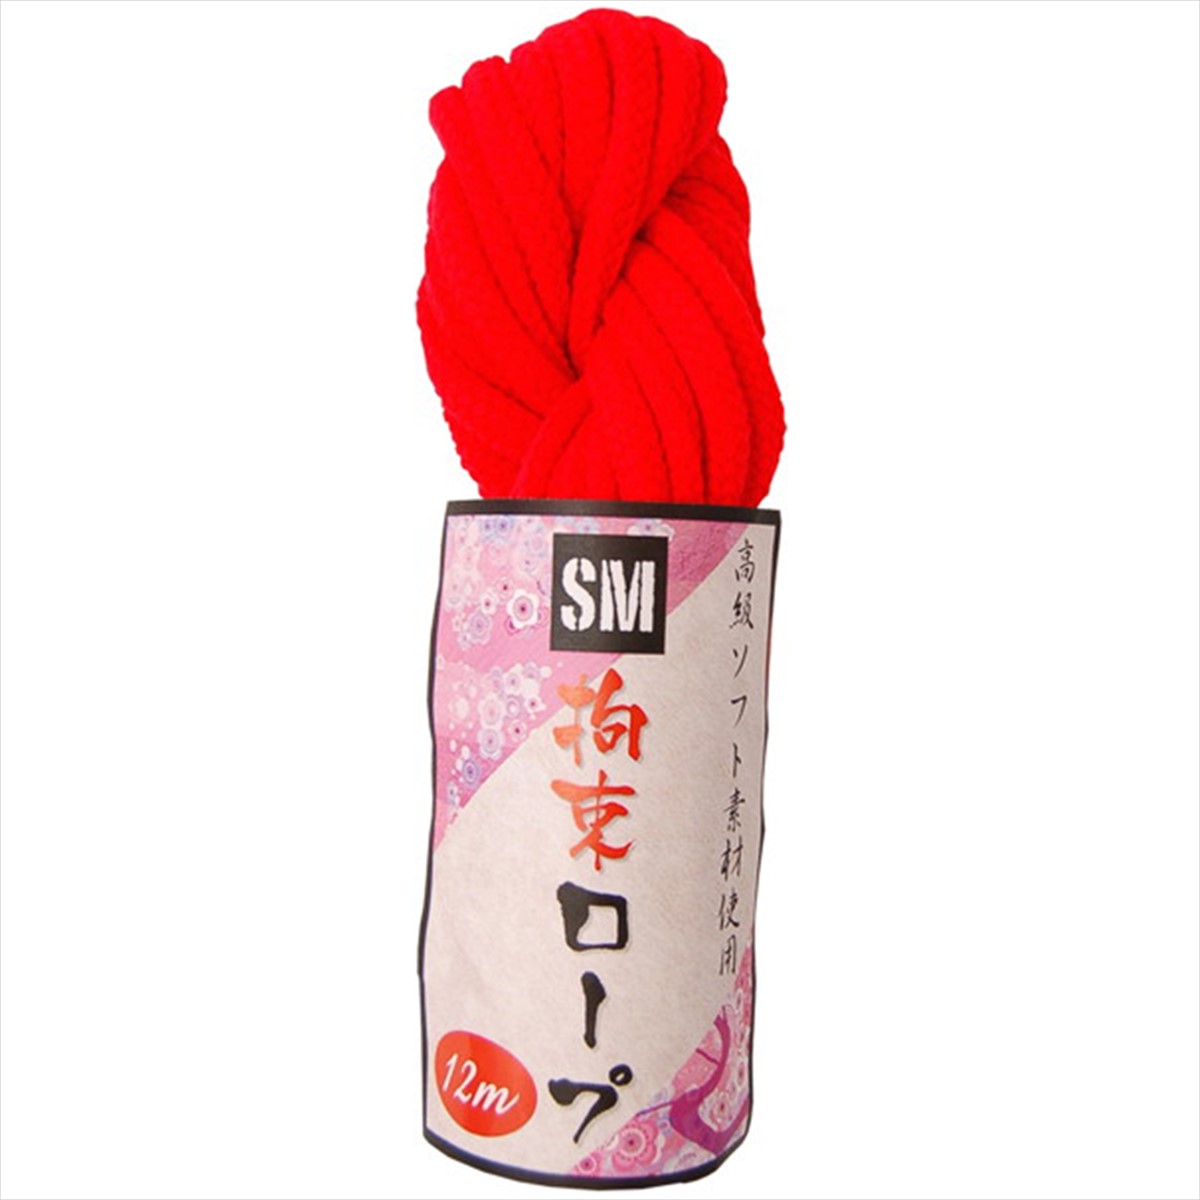 SM拘束ロープ(12m)赤